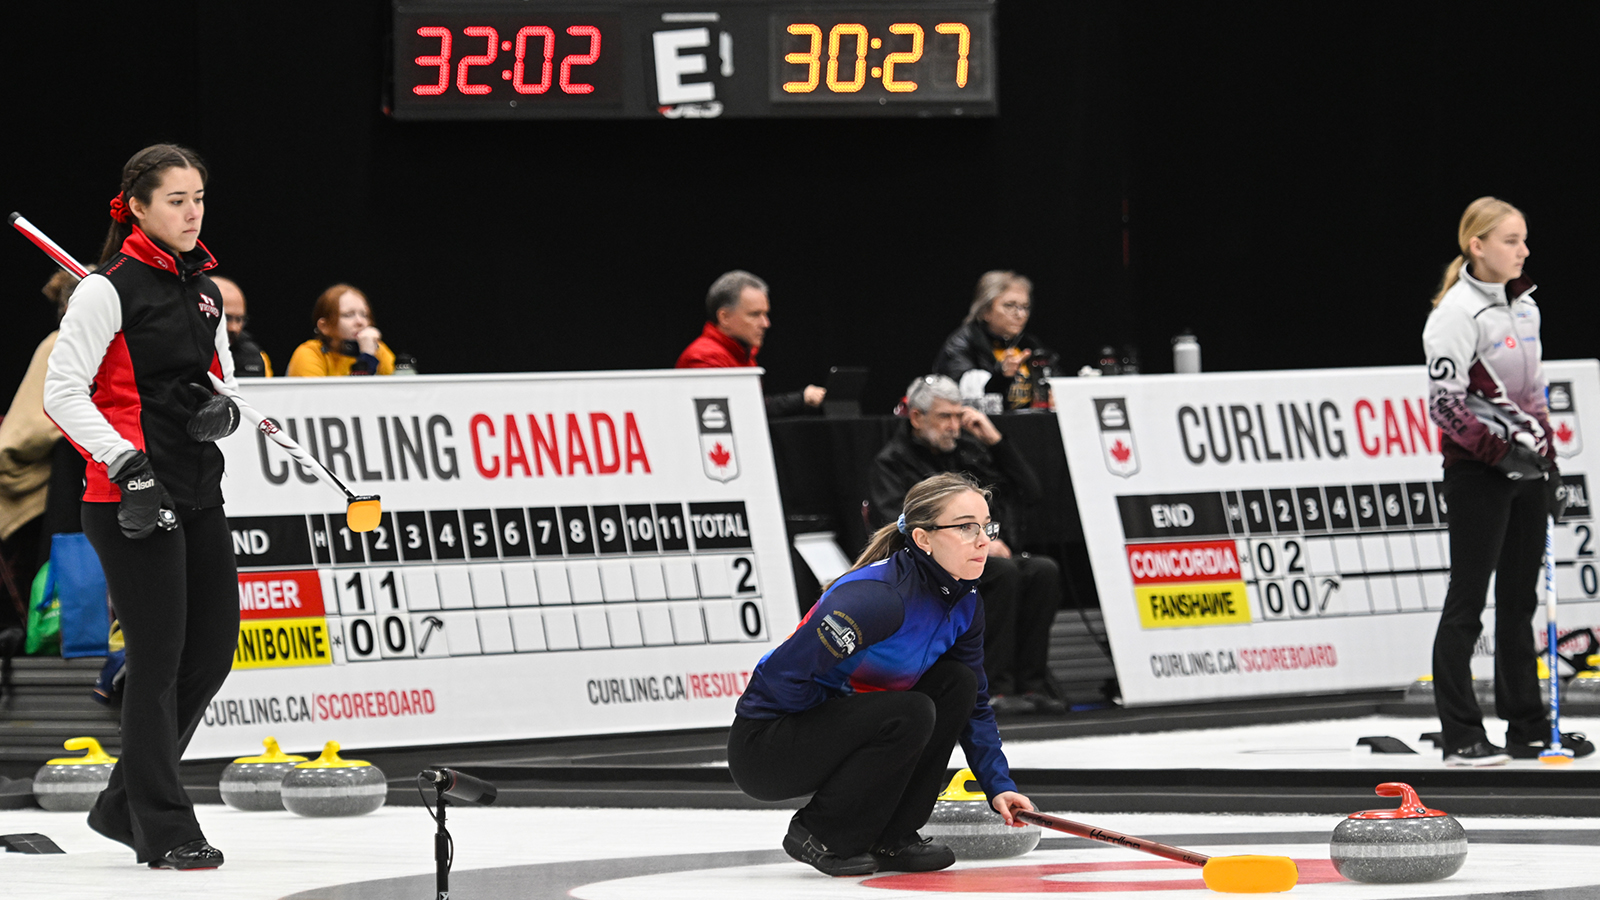 Le tableau des &eacute;liminatoires est confirm&eacute; au Championnat canadien ACSC Curling Canada